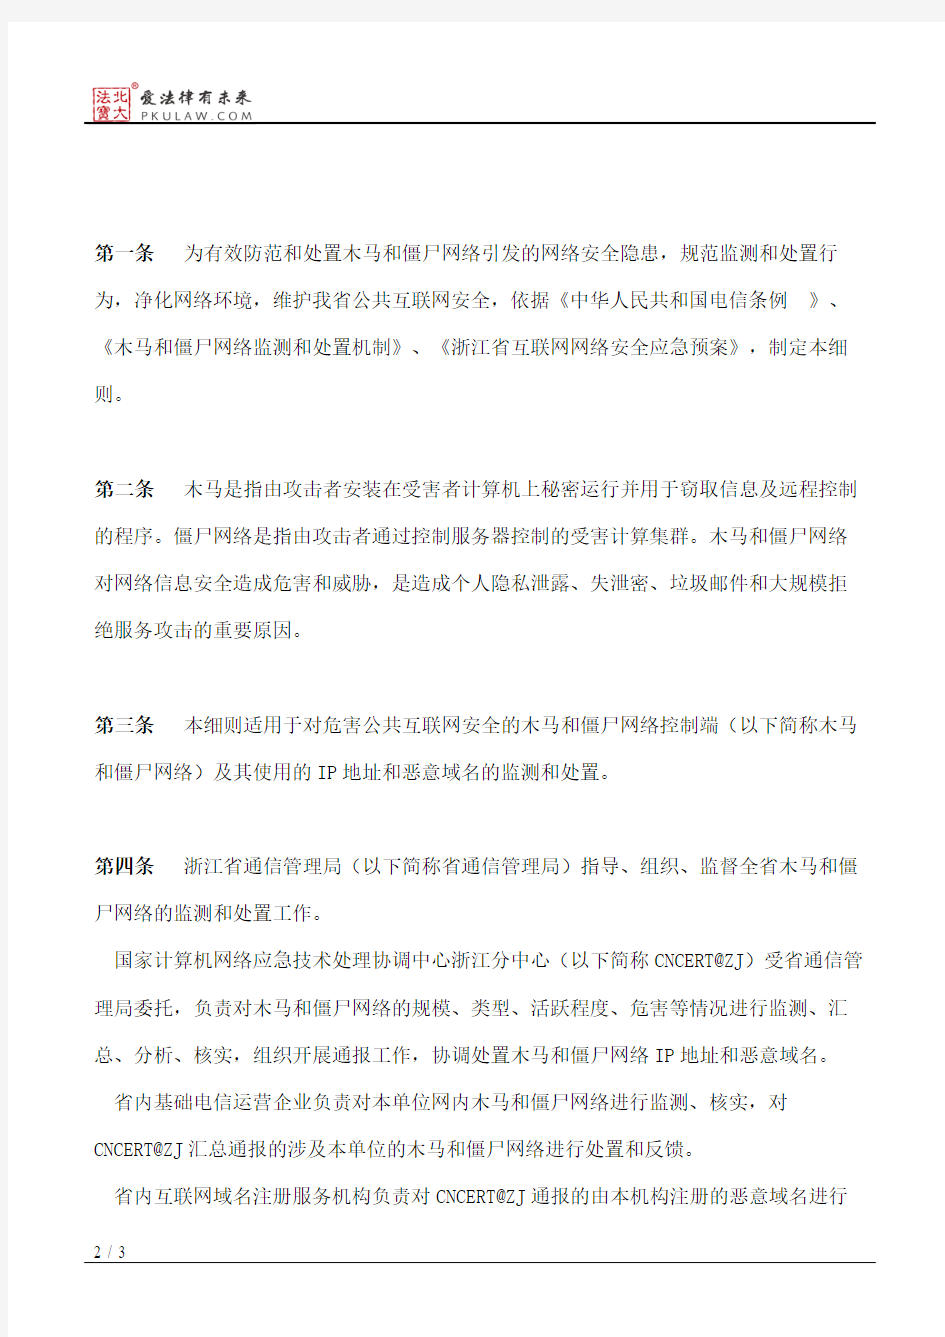 浙江省通信管理局关于印发木马和僵尸网络监测与处置机制实施细则的通知